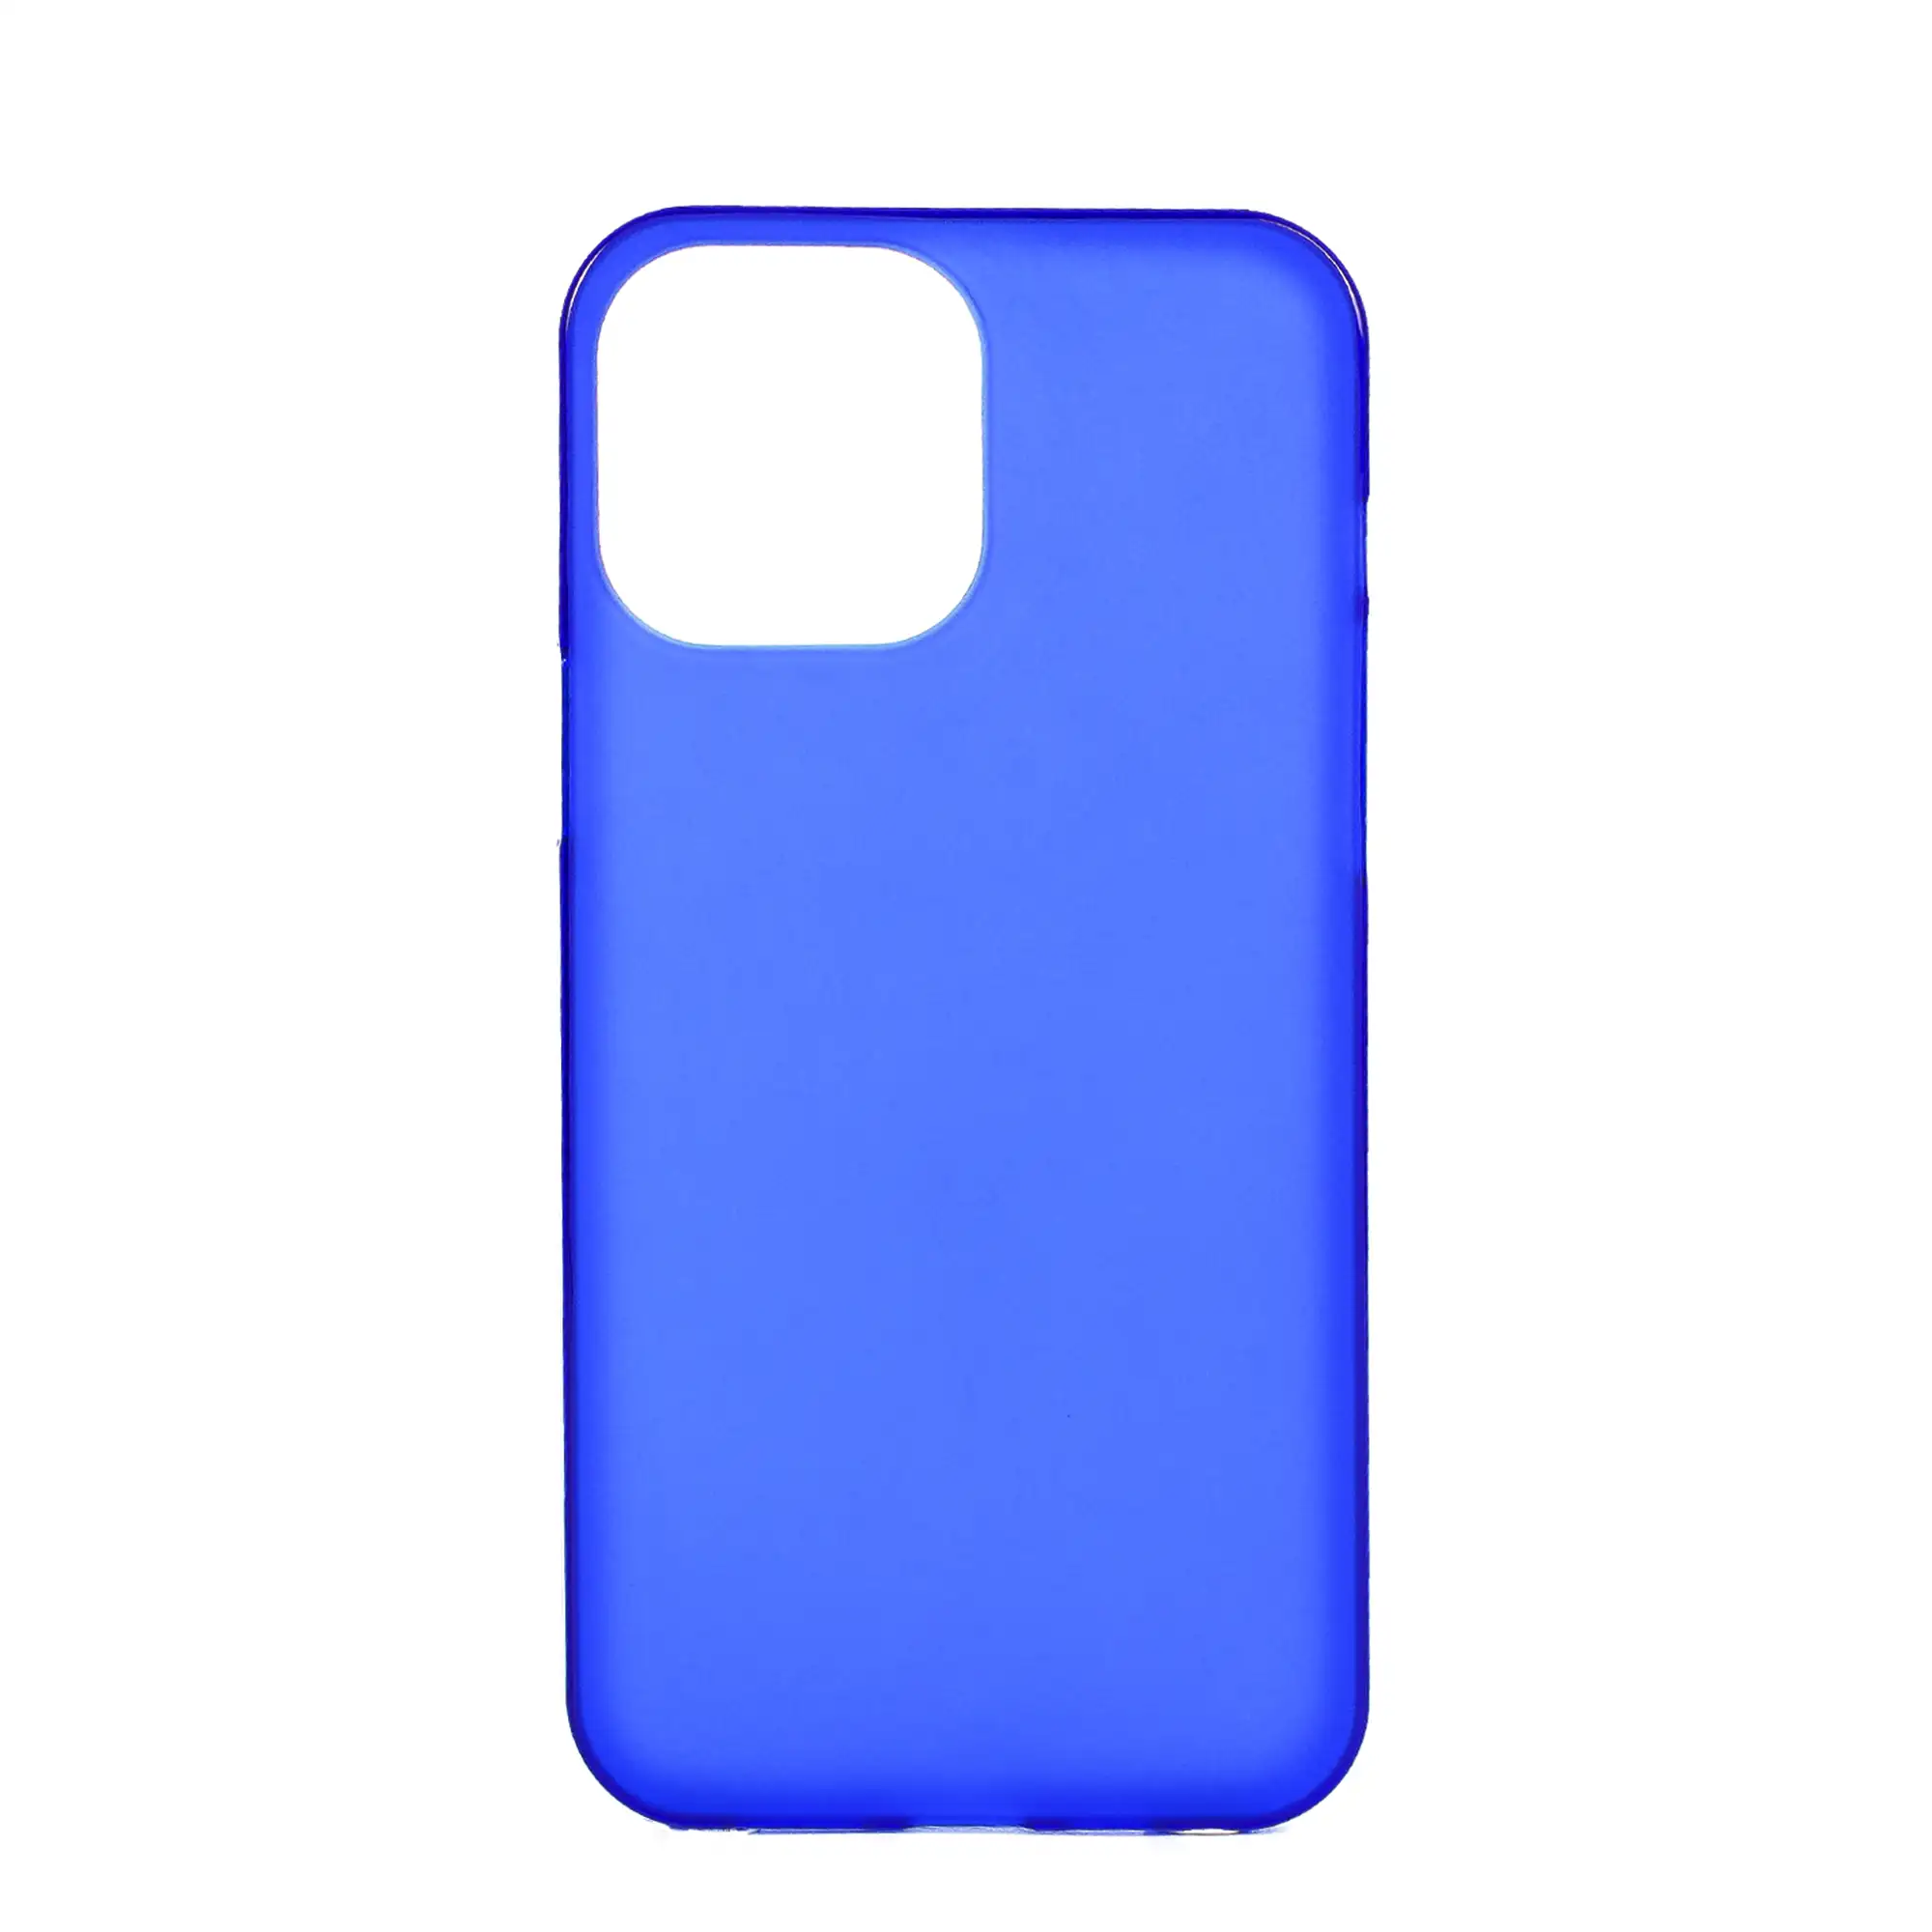 Carcasa de silicona para iPhone 13 Pro Max. Acabado semi transparente mate con bordes brillo.